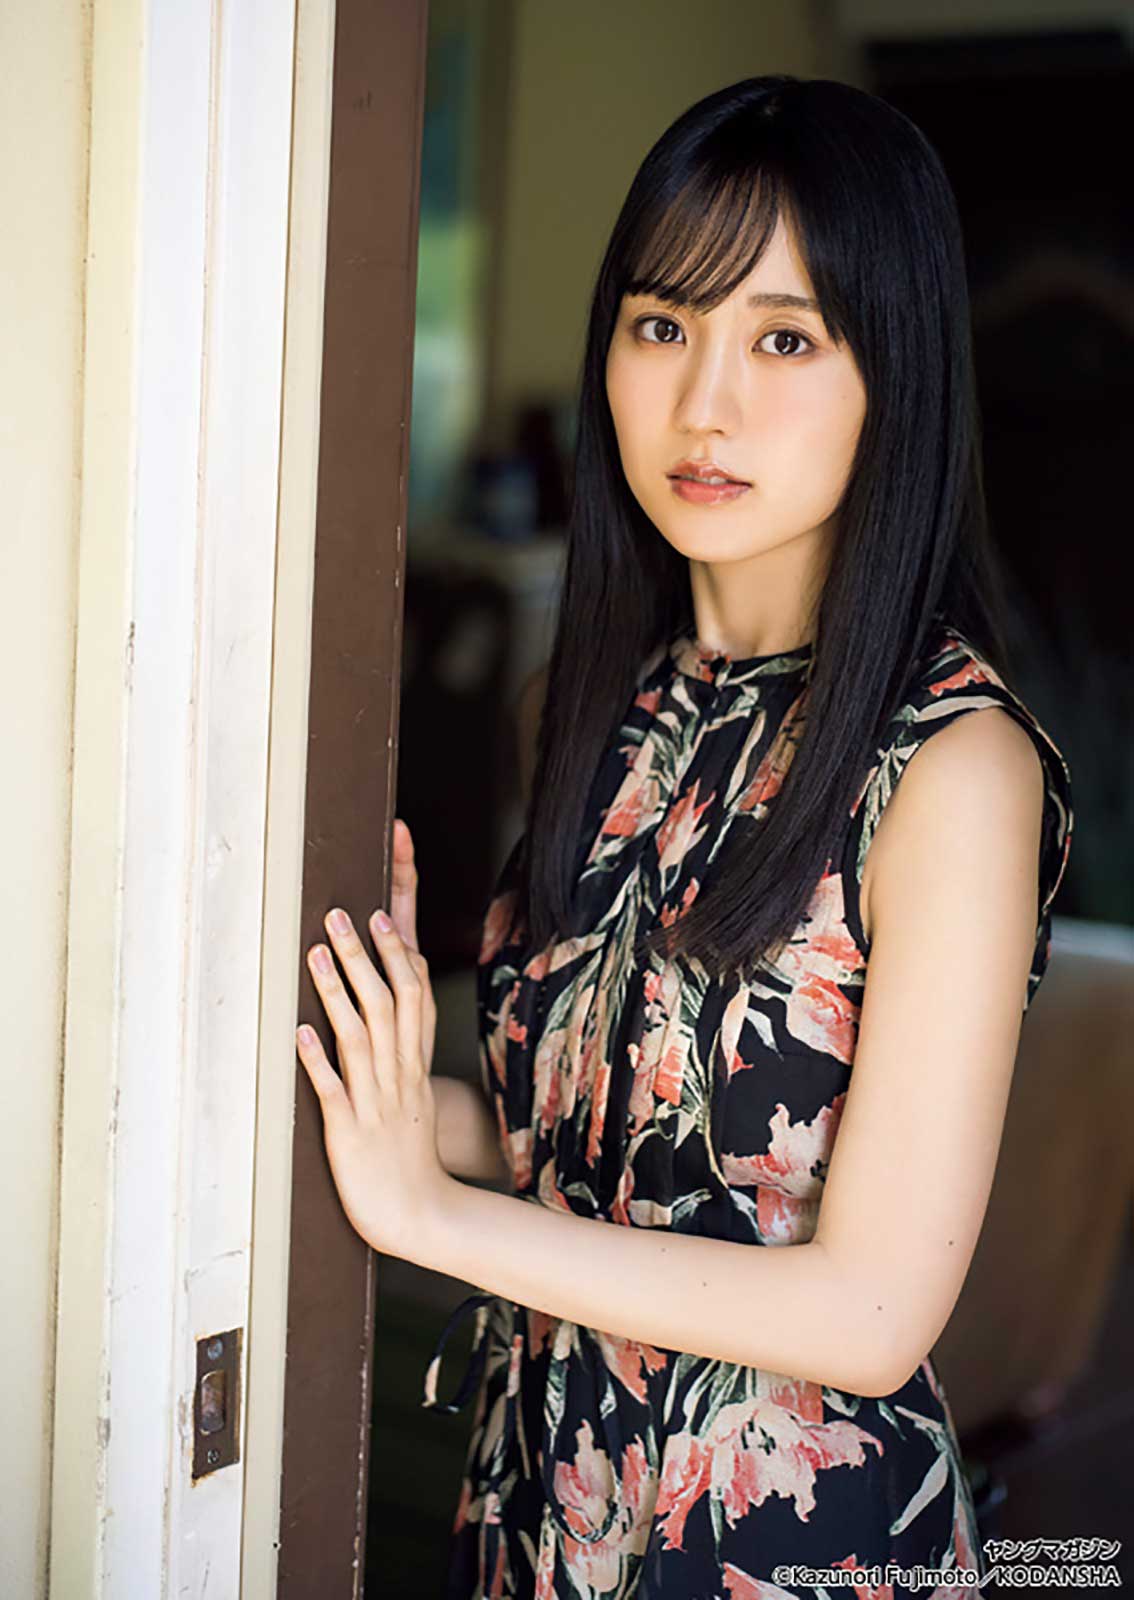 乃木坂46賀喜遥香、ノースリーブの美肌輝く “20回目の夏”でキュートな笑顔 - モデルプレス